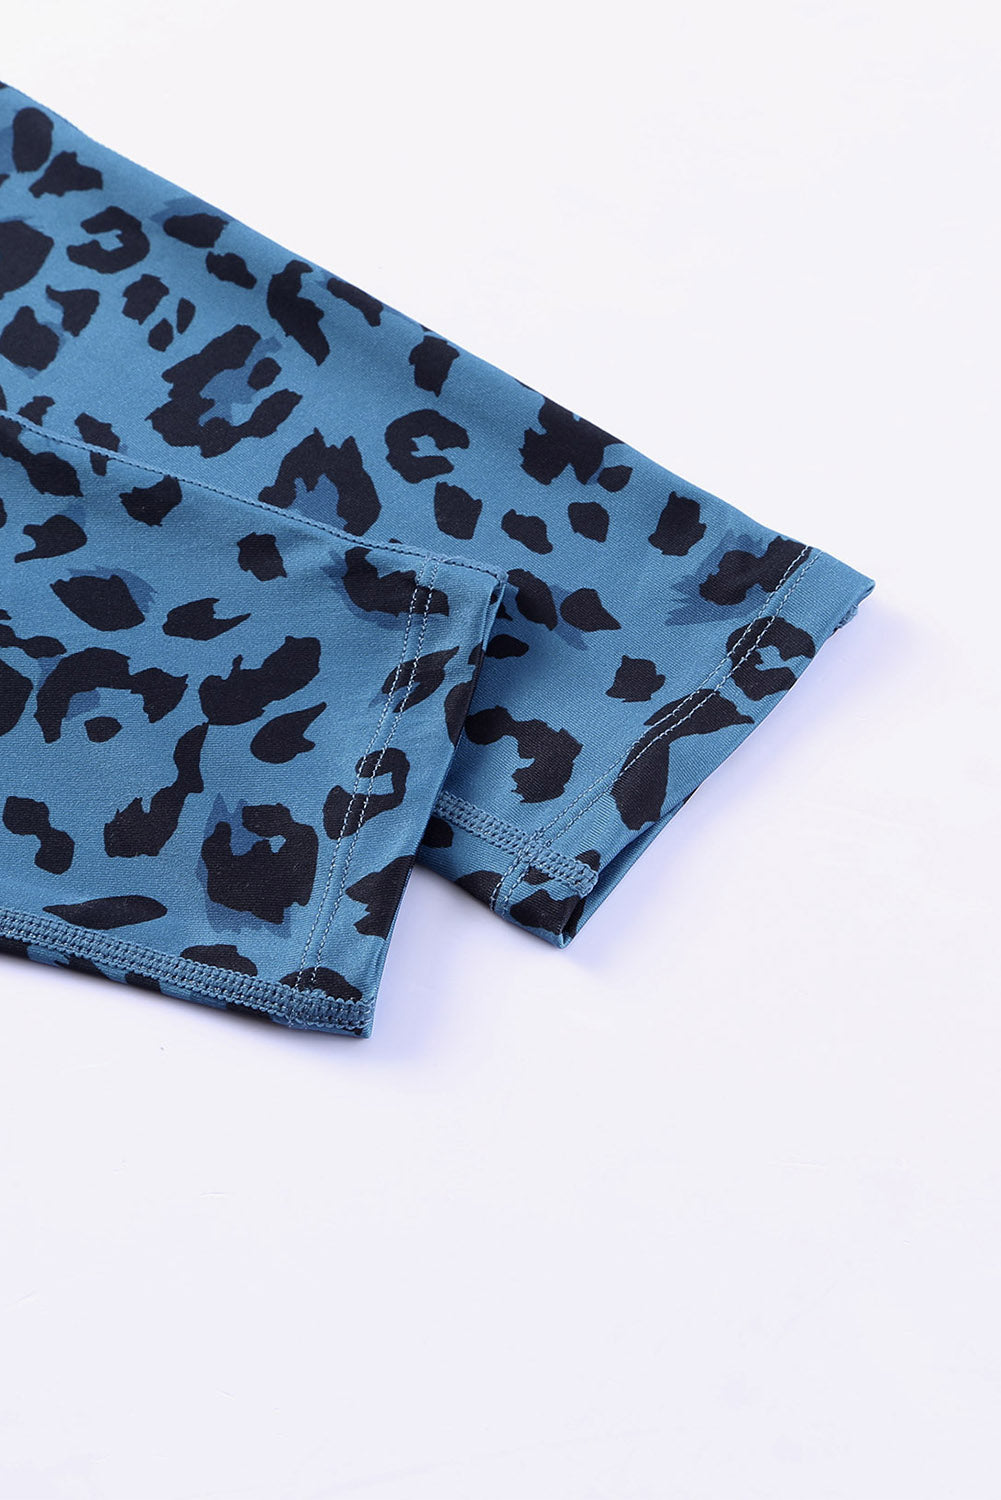 Legging actif bleu classique à imprimé léopard